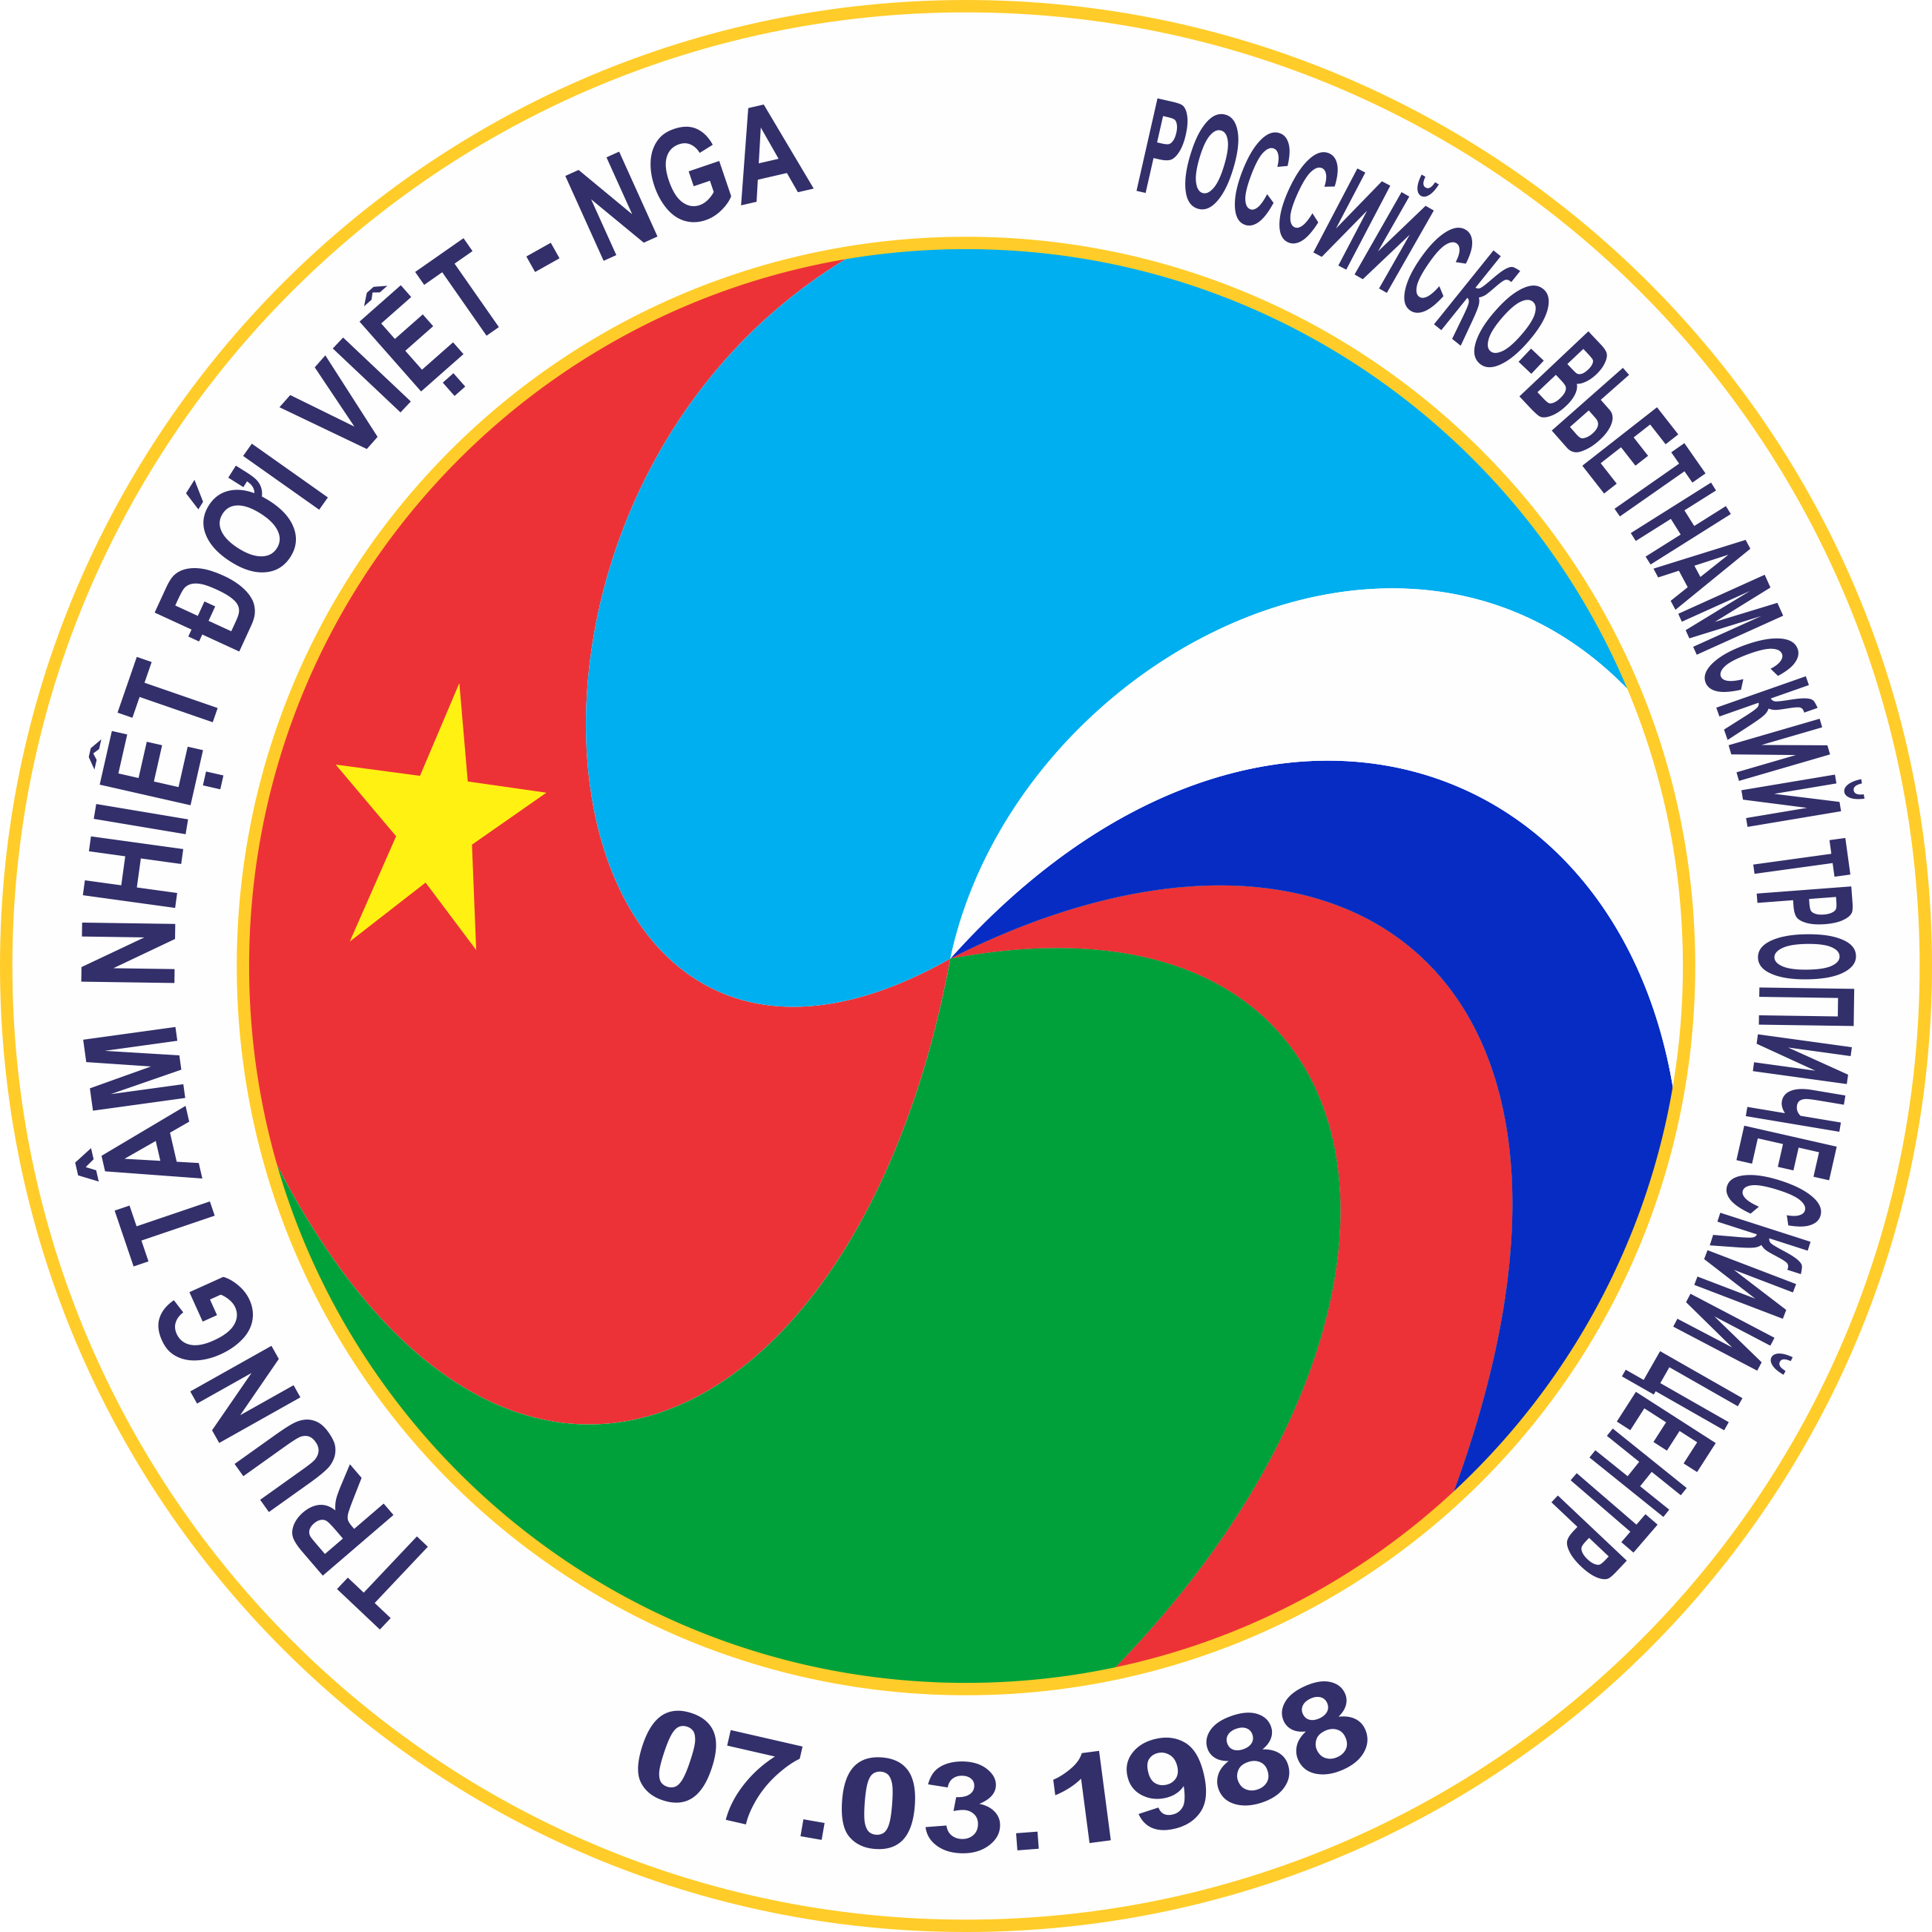 Trung tâm Nhiệt đới Việt - Nga được giao chủ trì đề tài nghiên cứu cơ bản được quỹ Phát triển khoa học và công nghệ Quốc gia tài trợ